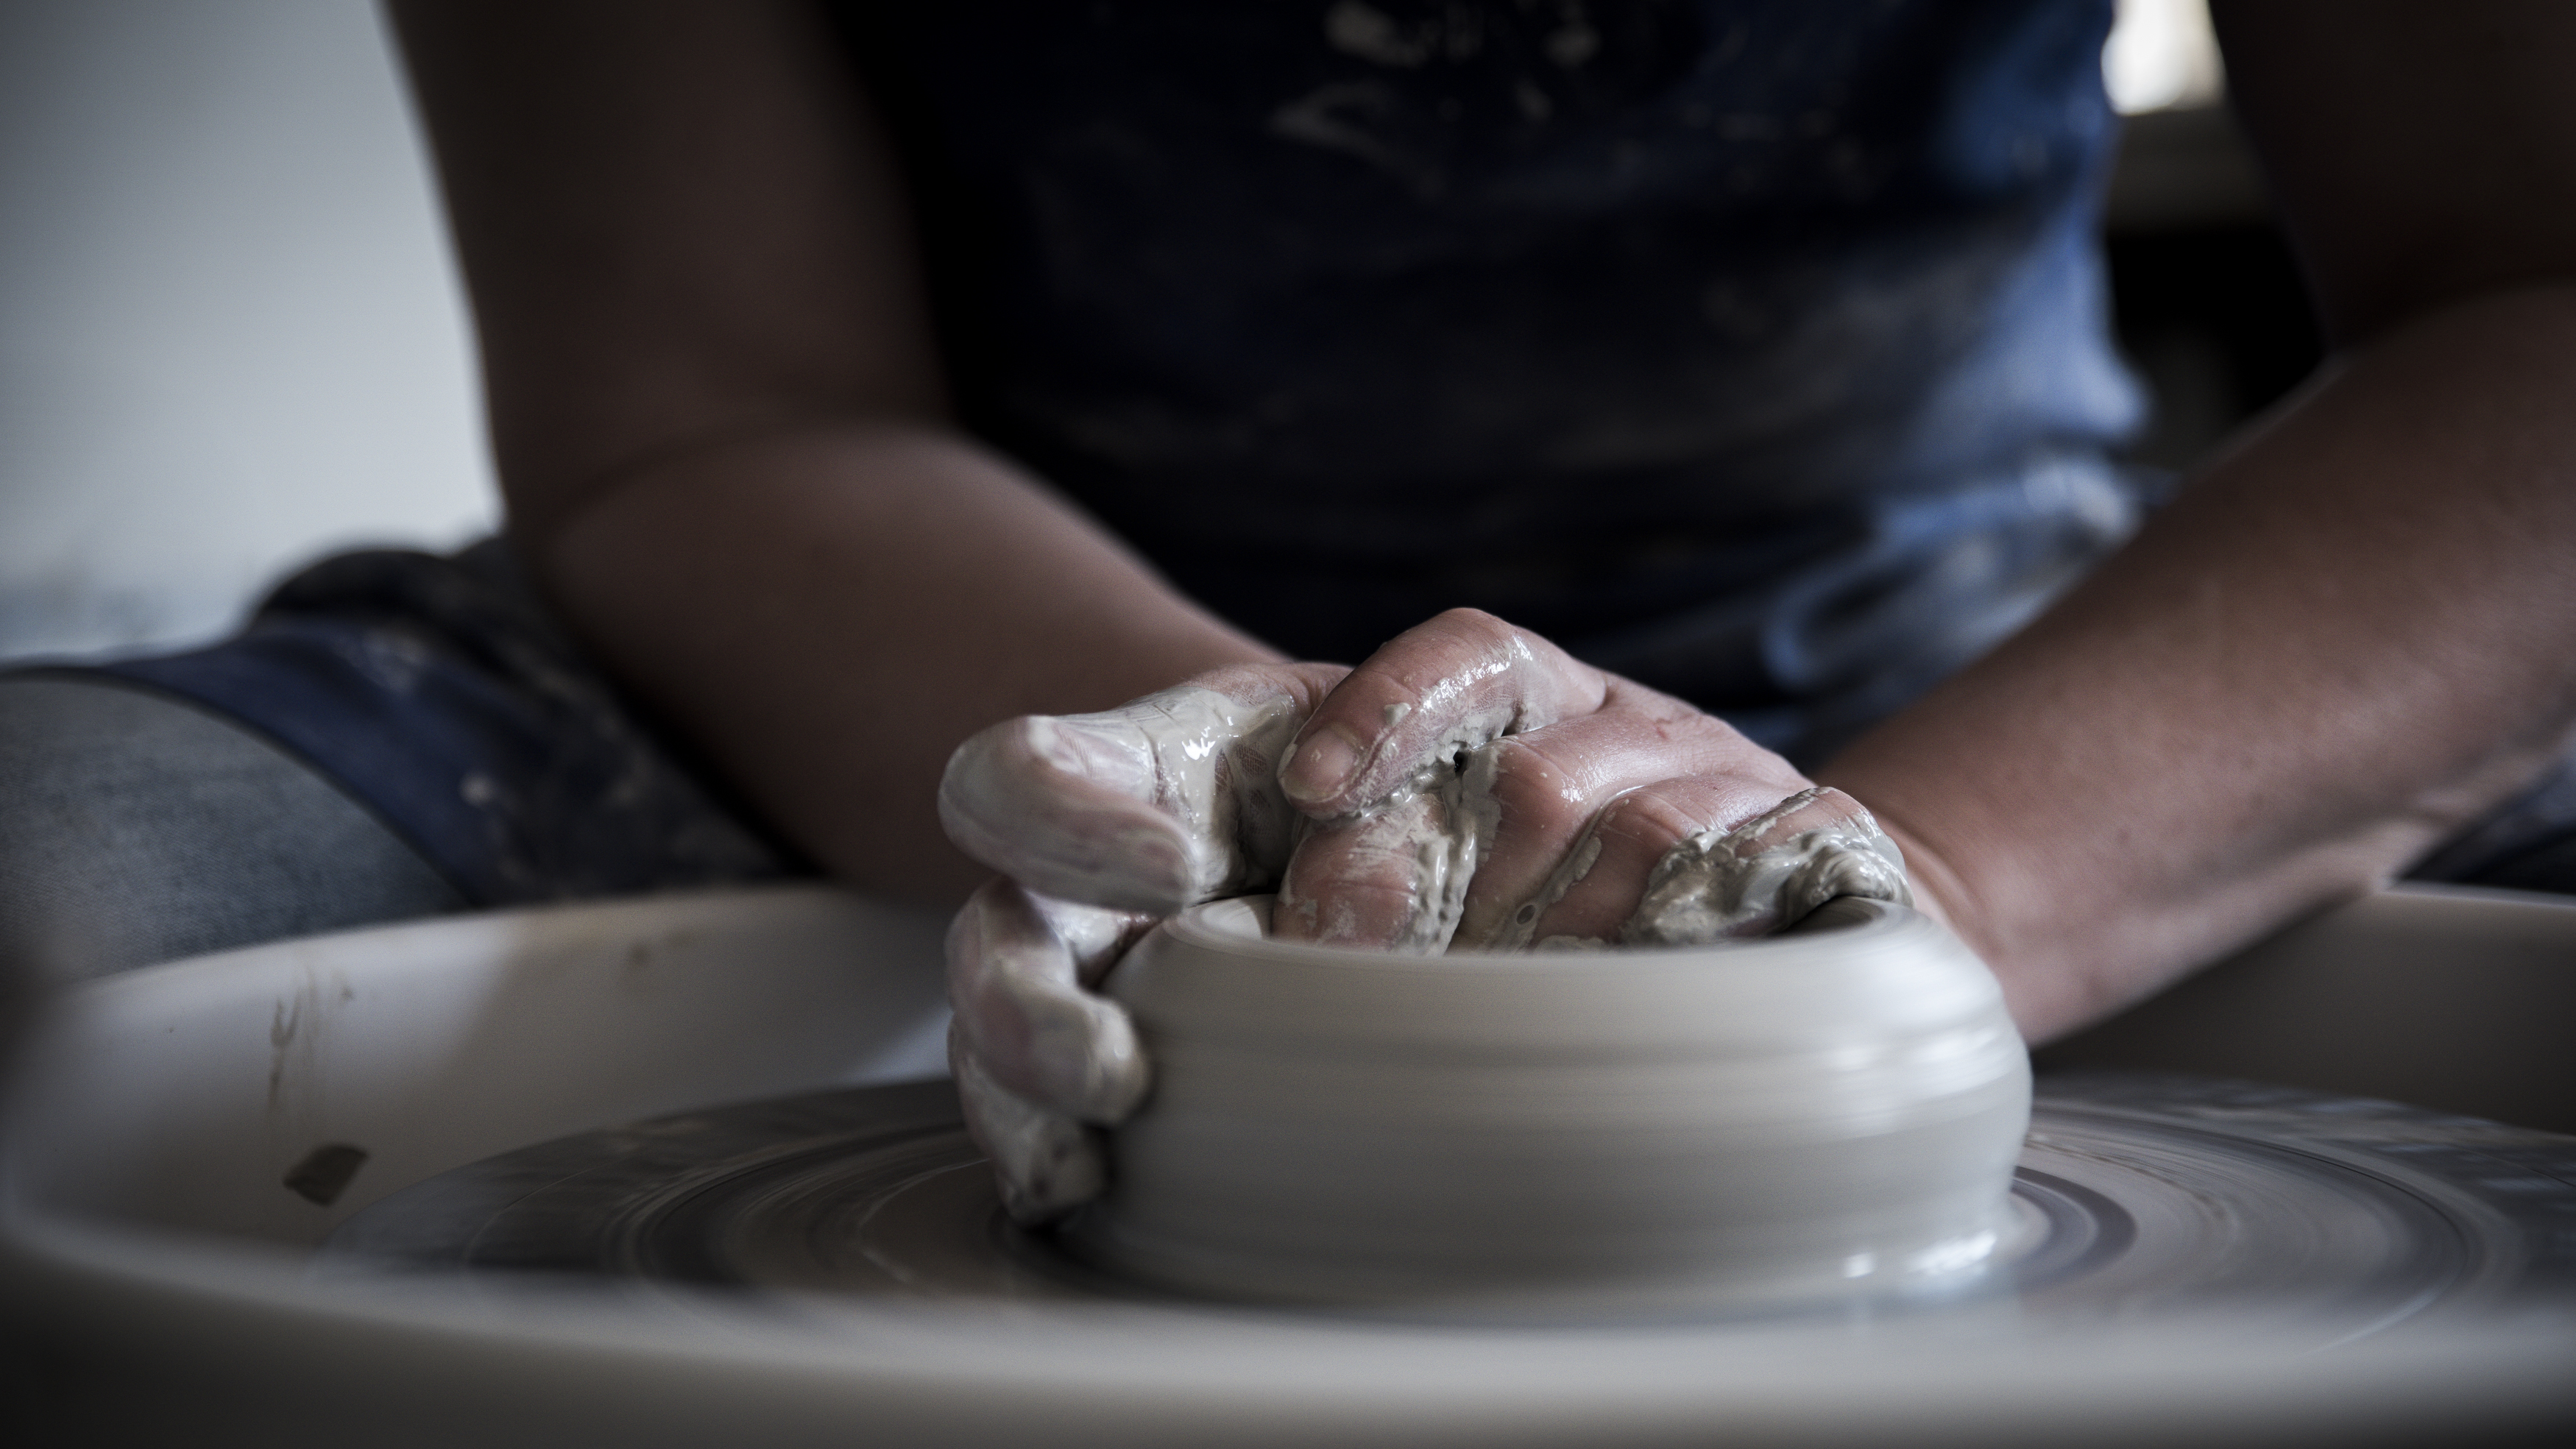 Laeti céramique, Atelier de poterie, 60240 Lattainville